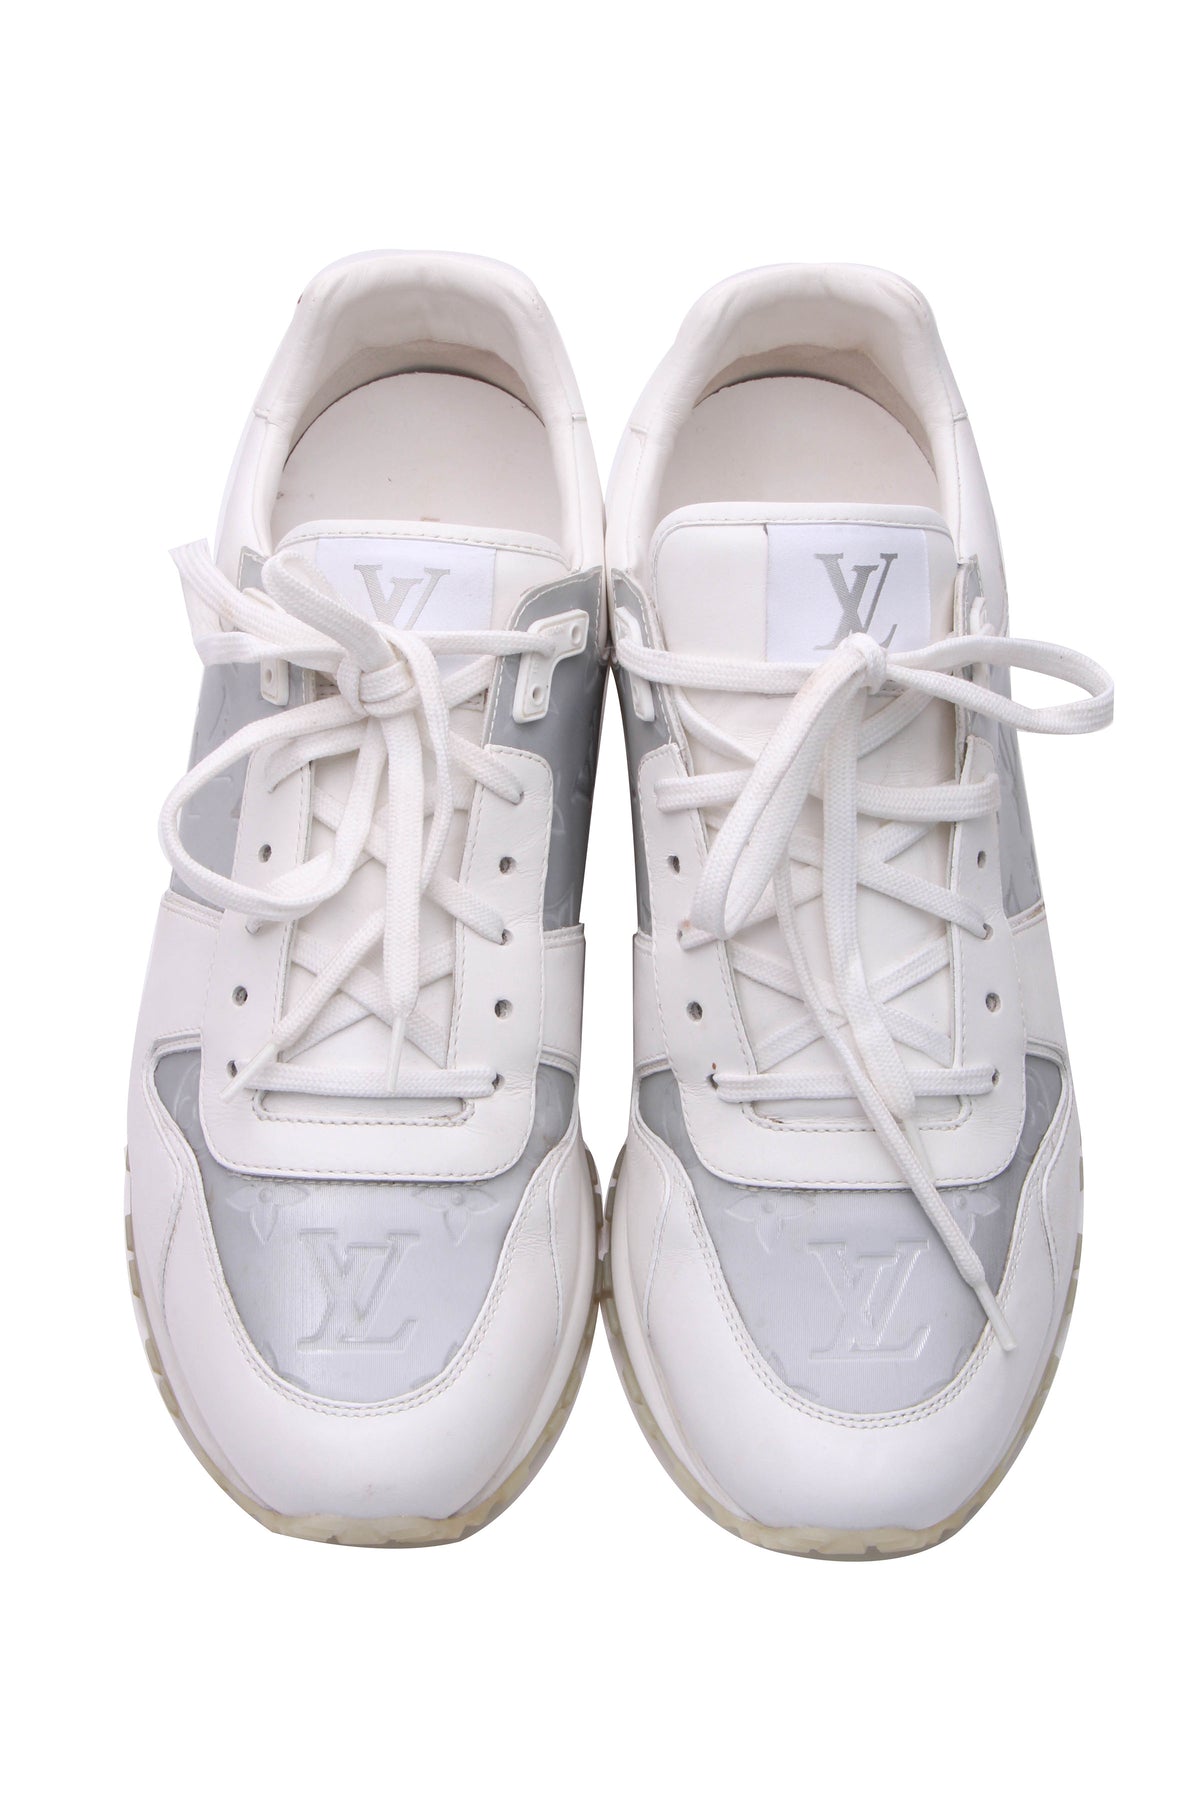 Louis Vuitton, Shoes, Louis Vuitton Run Away Sneakers Men